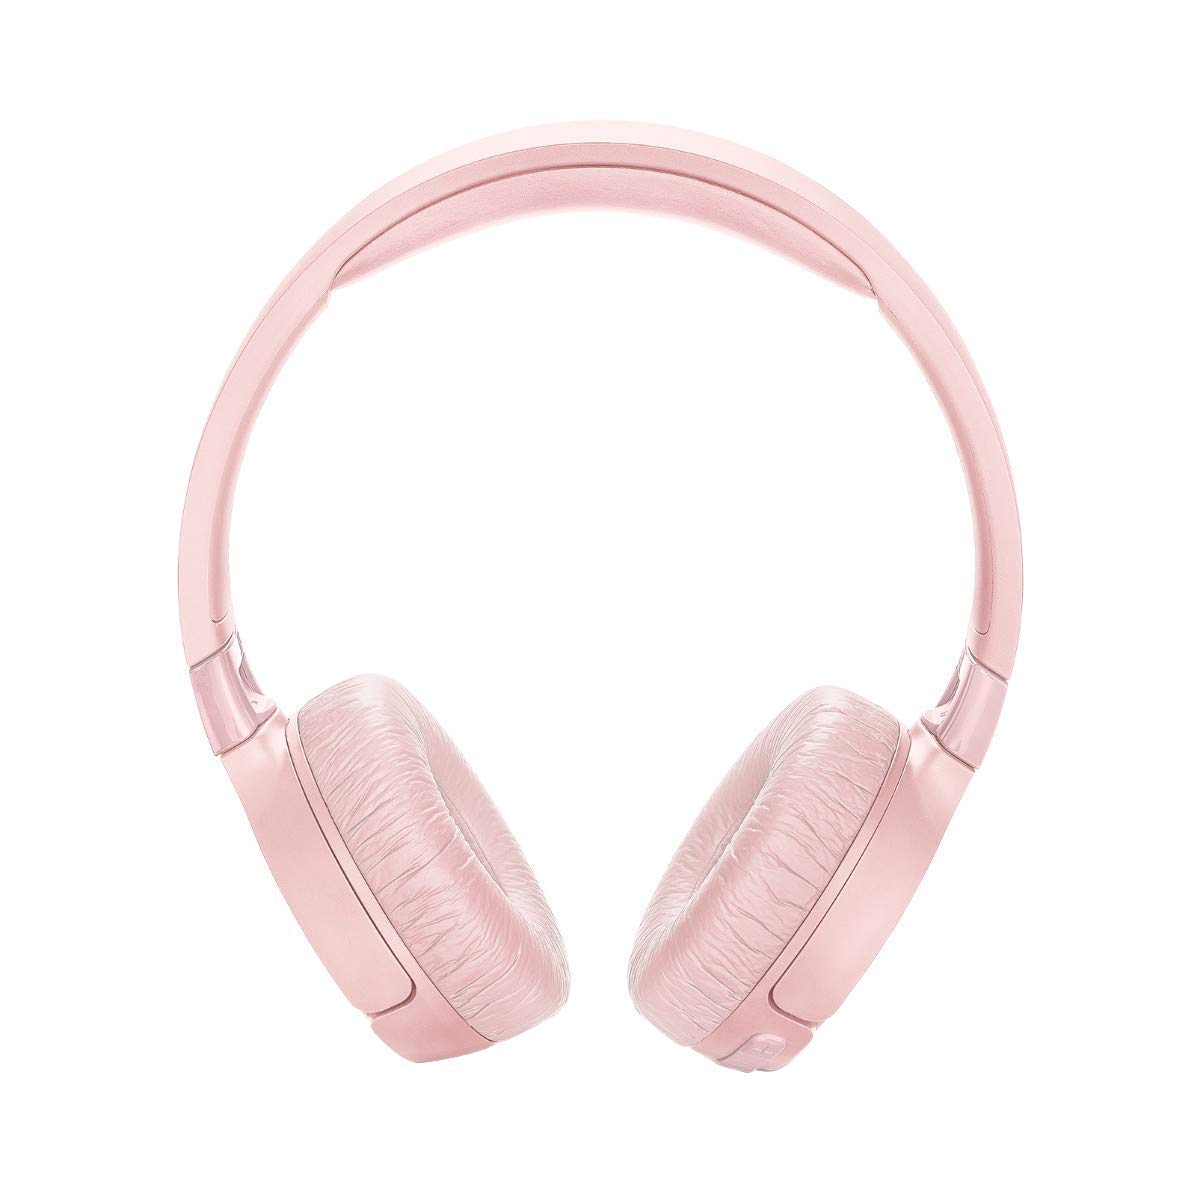 Casti wireless jbl tune 600 pink